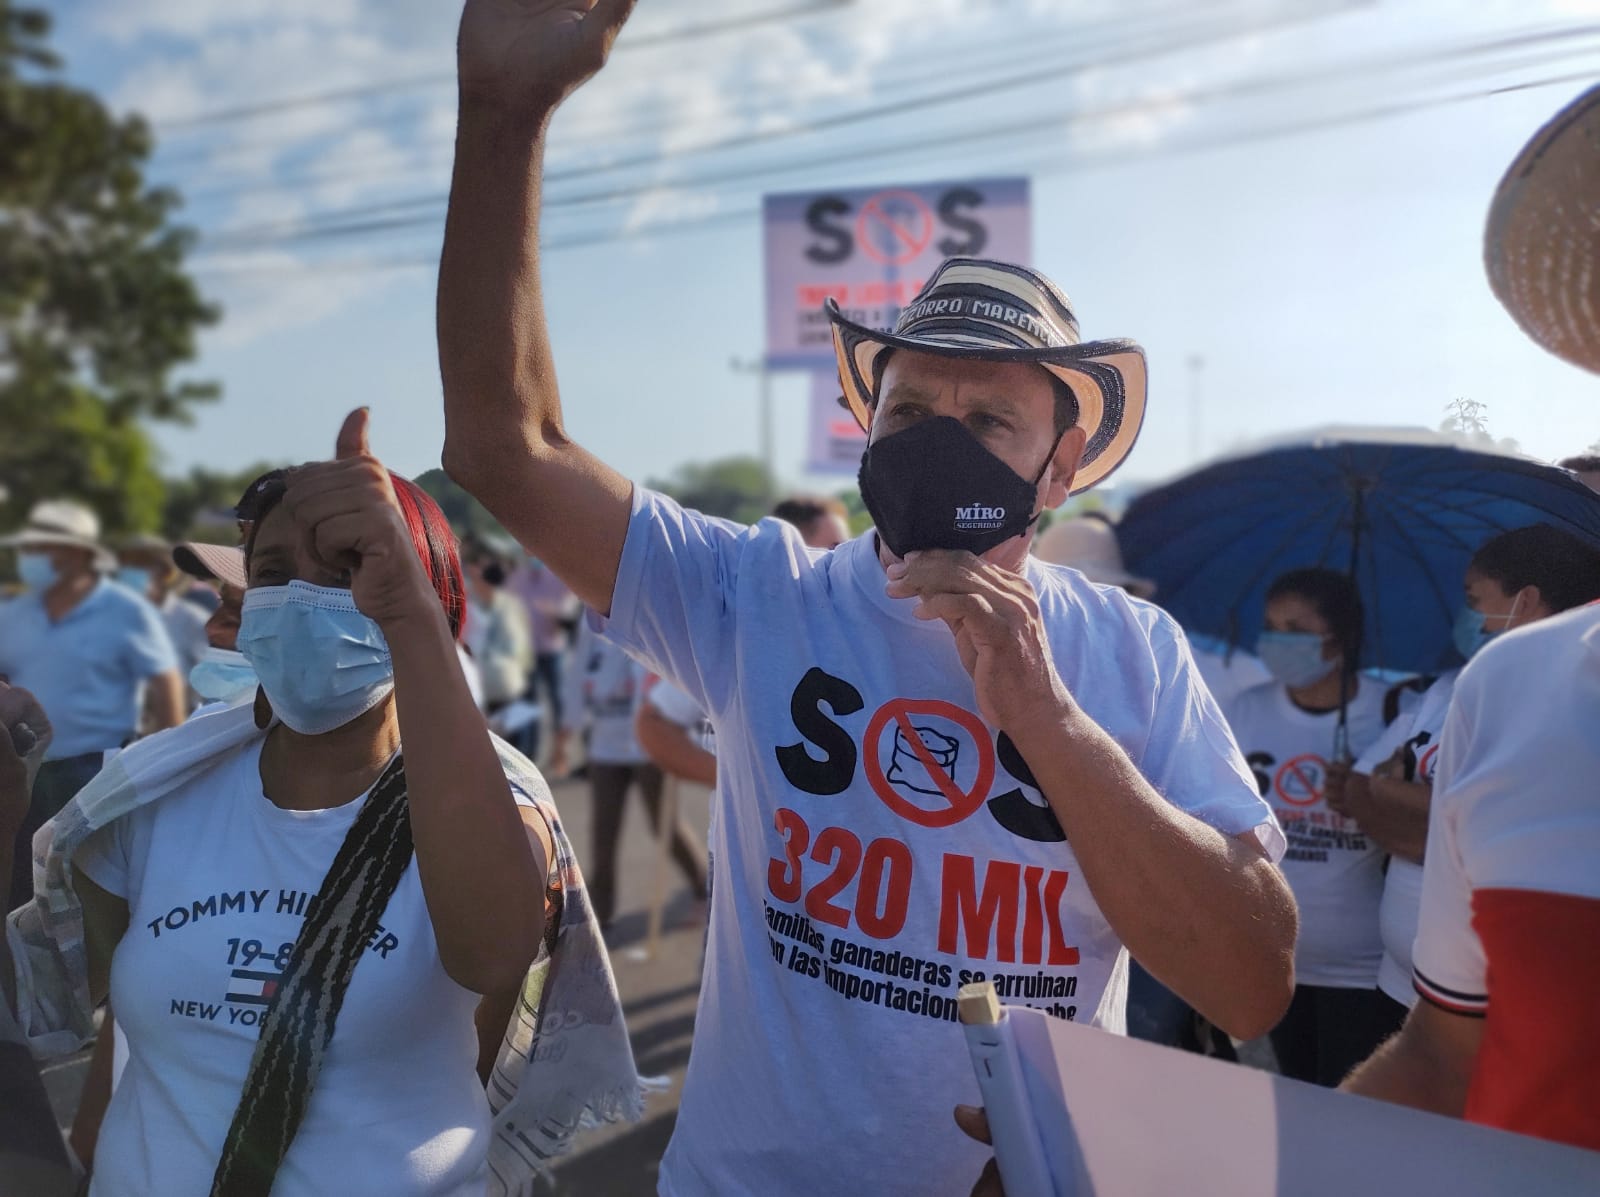 Ganaderos protestaron por la masiva importación de leche en polvo